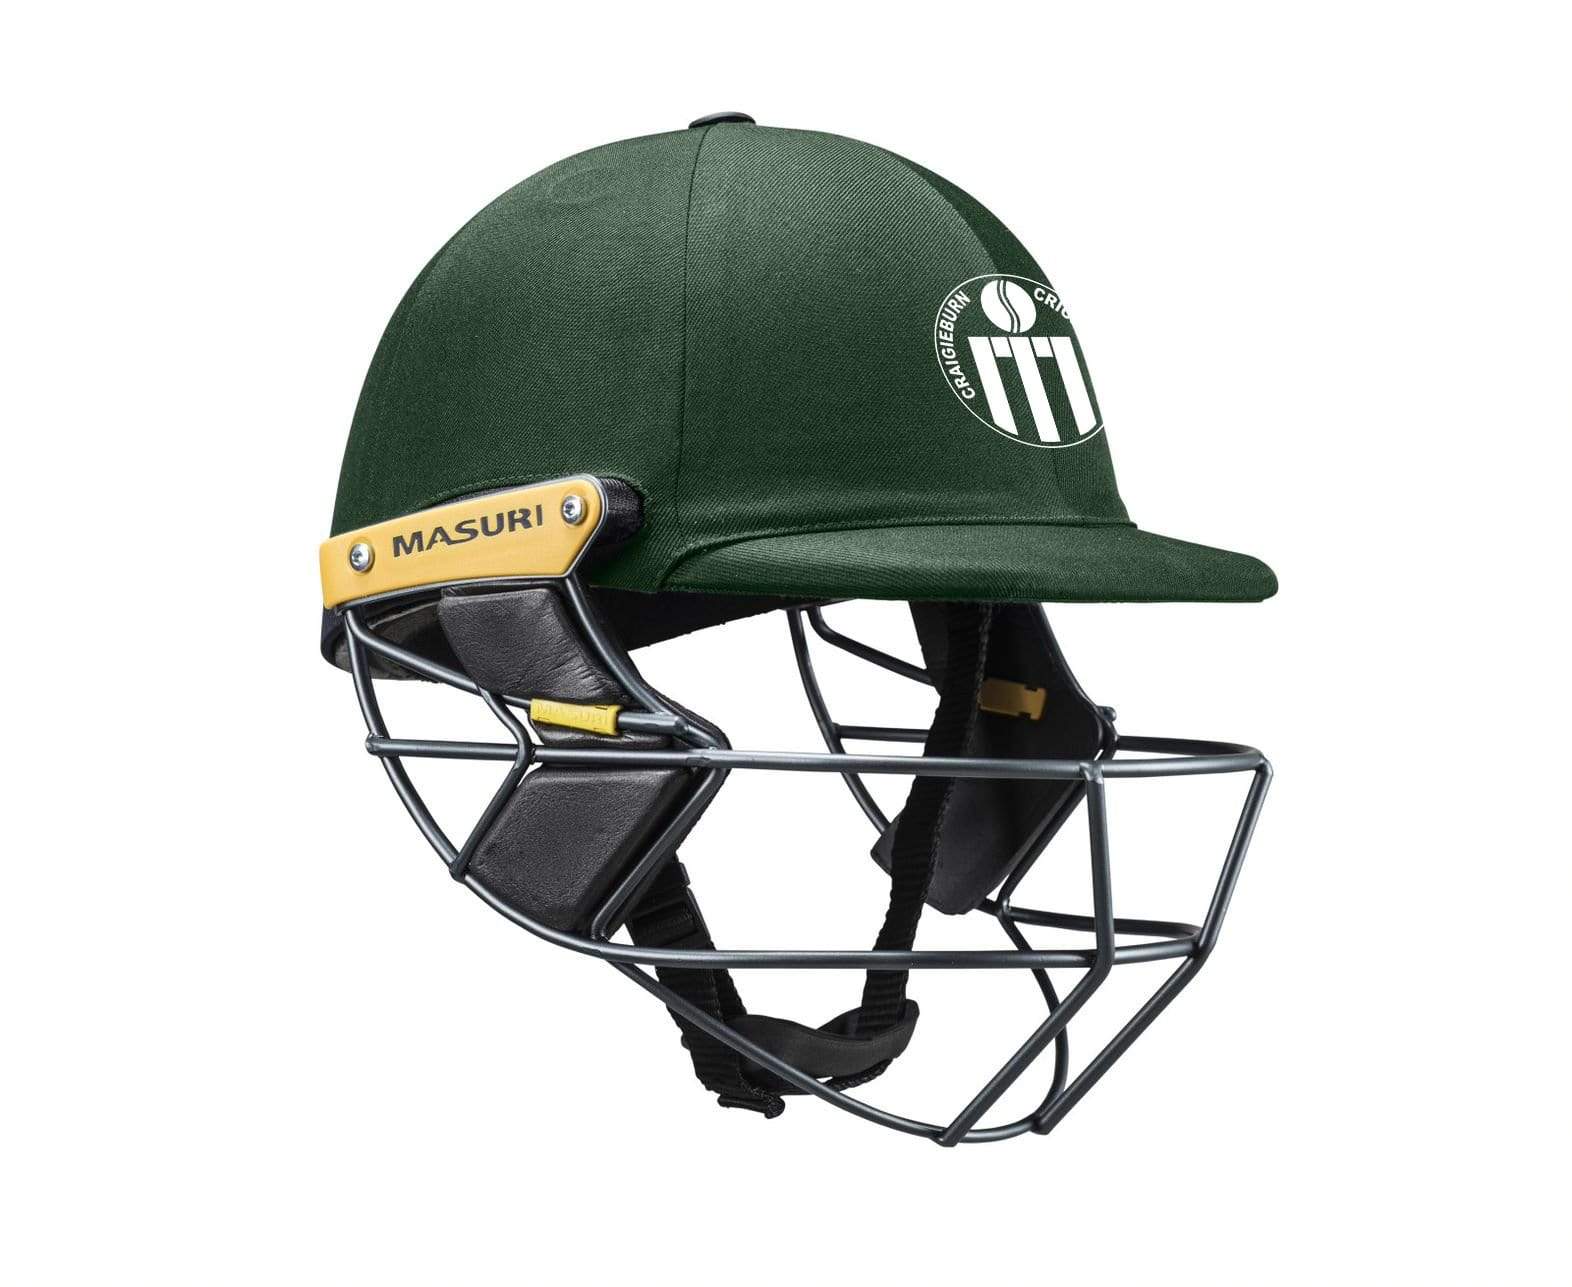 Masuri Club Helmet Craigeburn Cricket Club Helmet